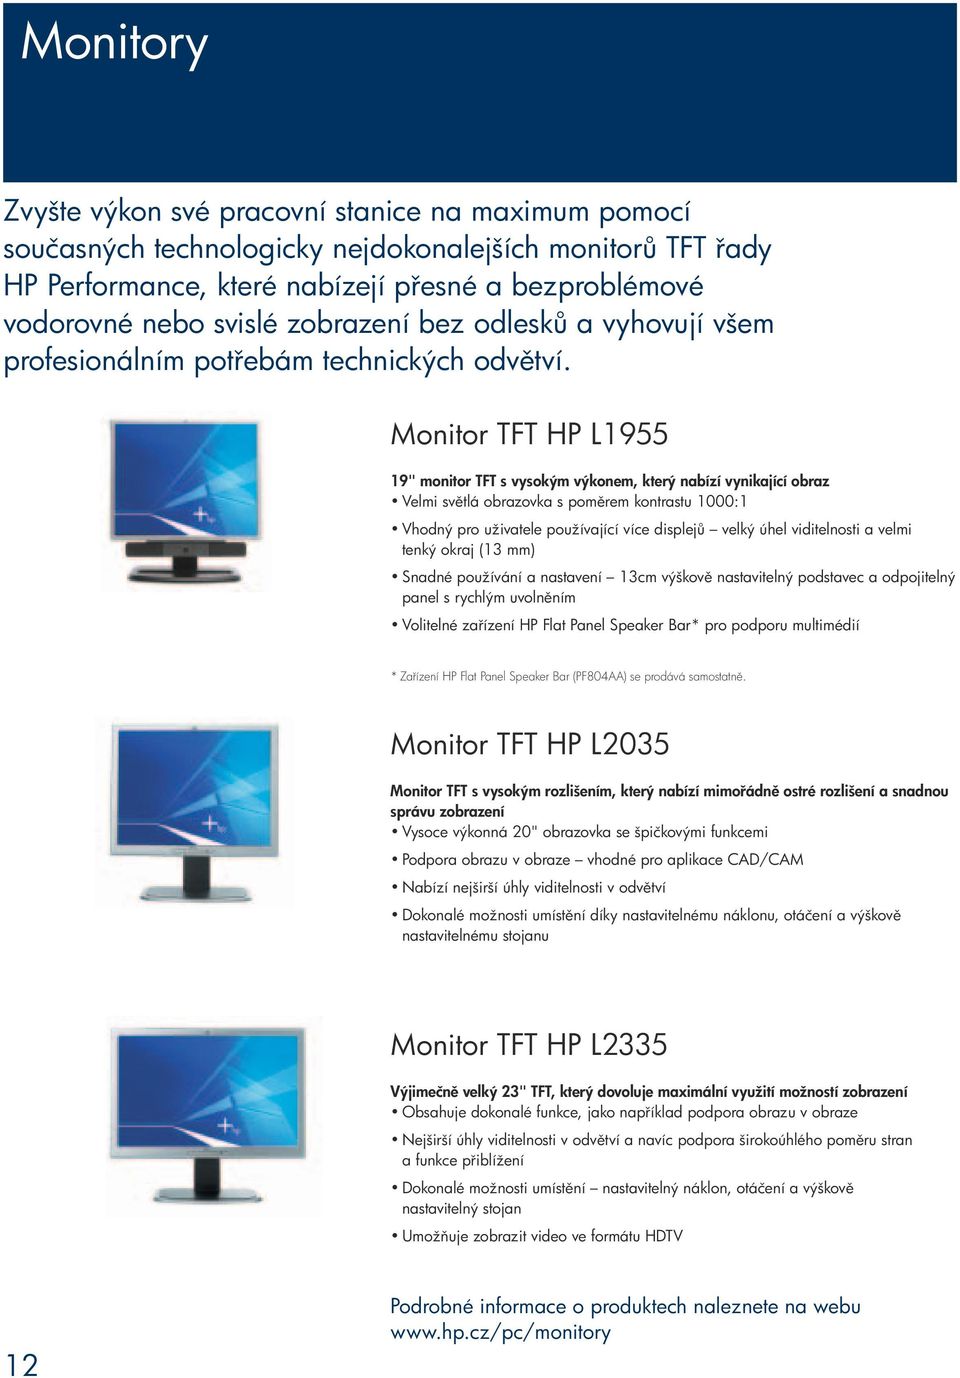 Monitor TFT HP L1955 19" monitor TFT s vysokým výkonem, který nabízí vynikající obraz Velmi sv tlá obrazovka s pom rem kontrastu 1000:1 Vhodný pro uživatele používající více displej velký úhel